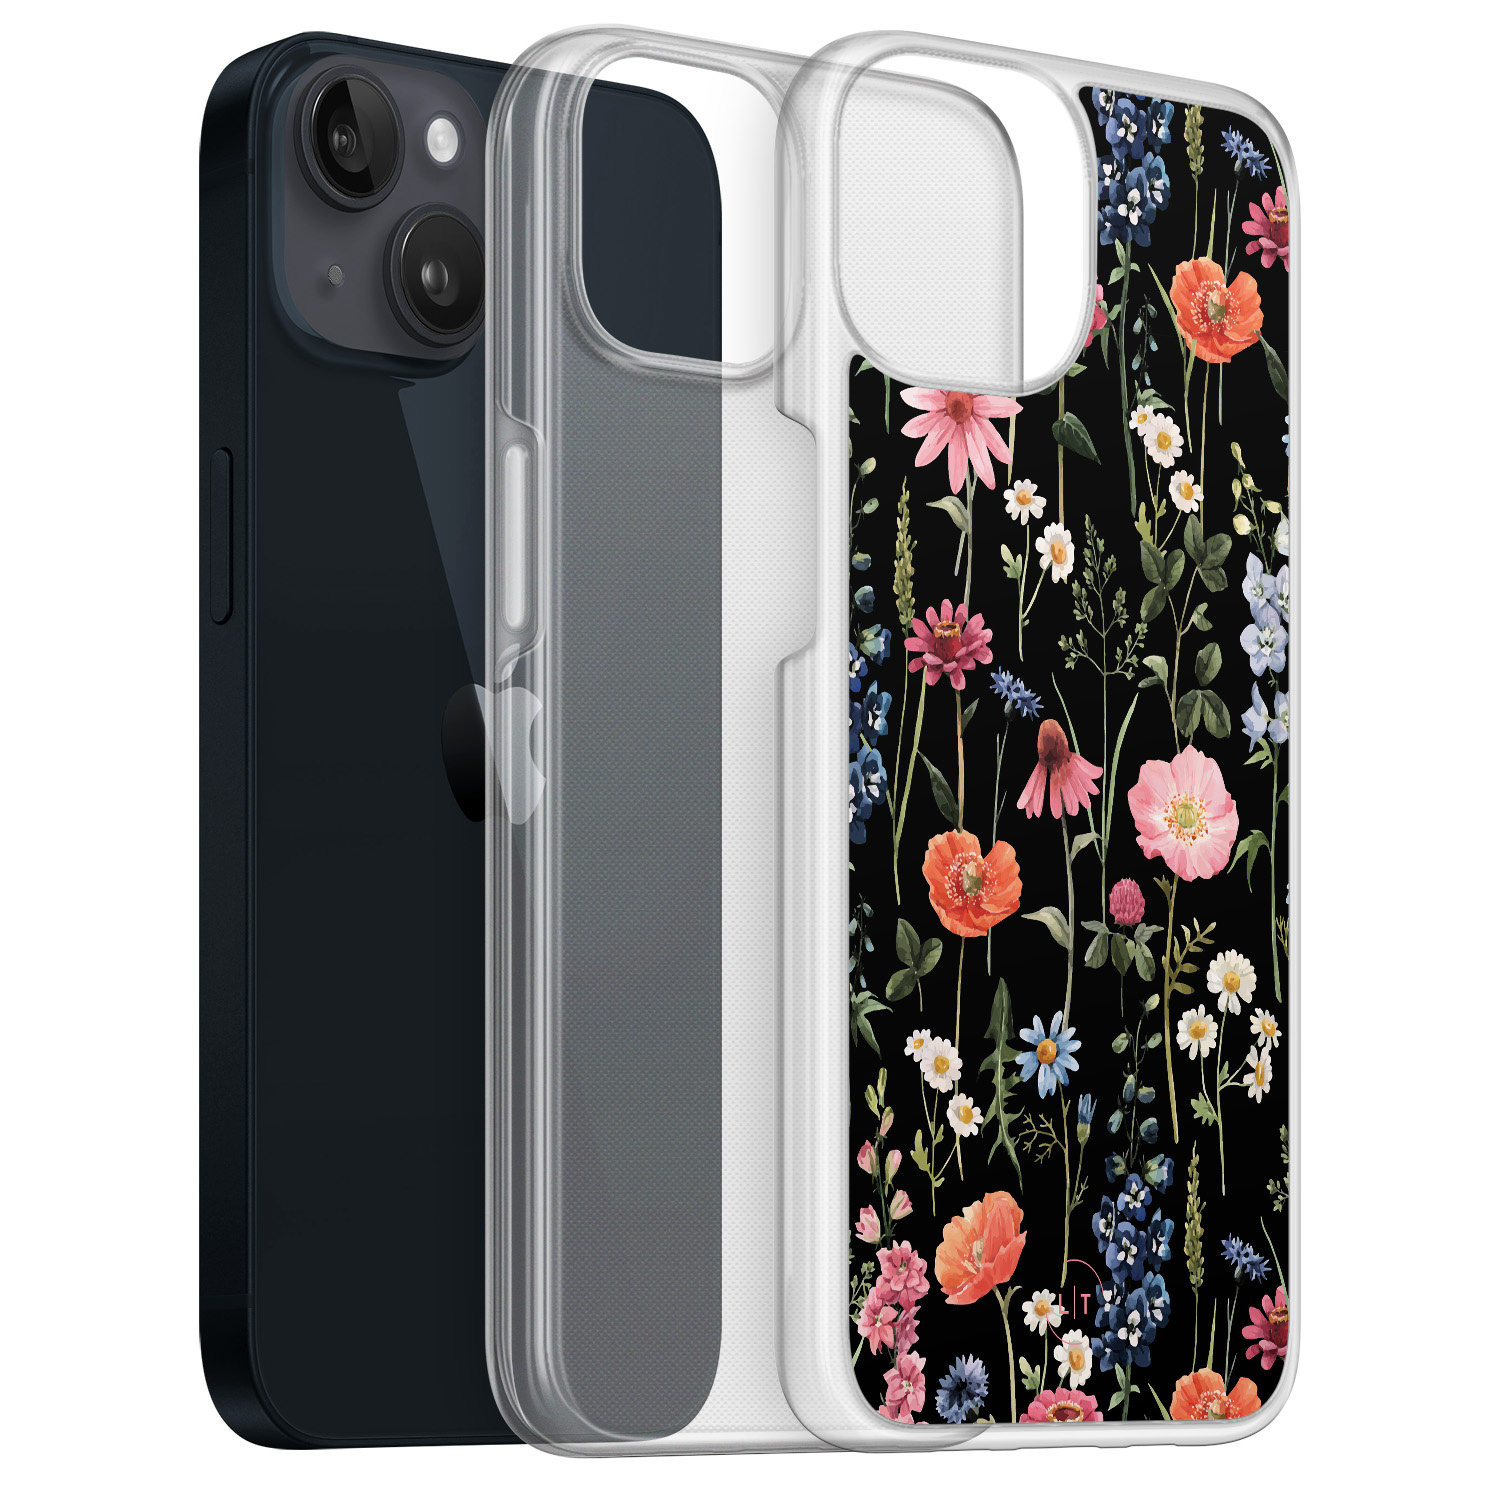 Leuke Telefoonhoesjes iPhone 13 hybride hoesje - Dark flowers